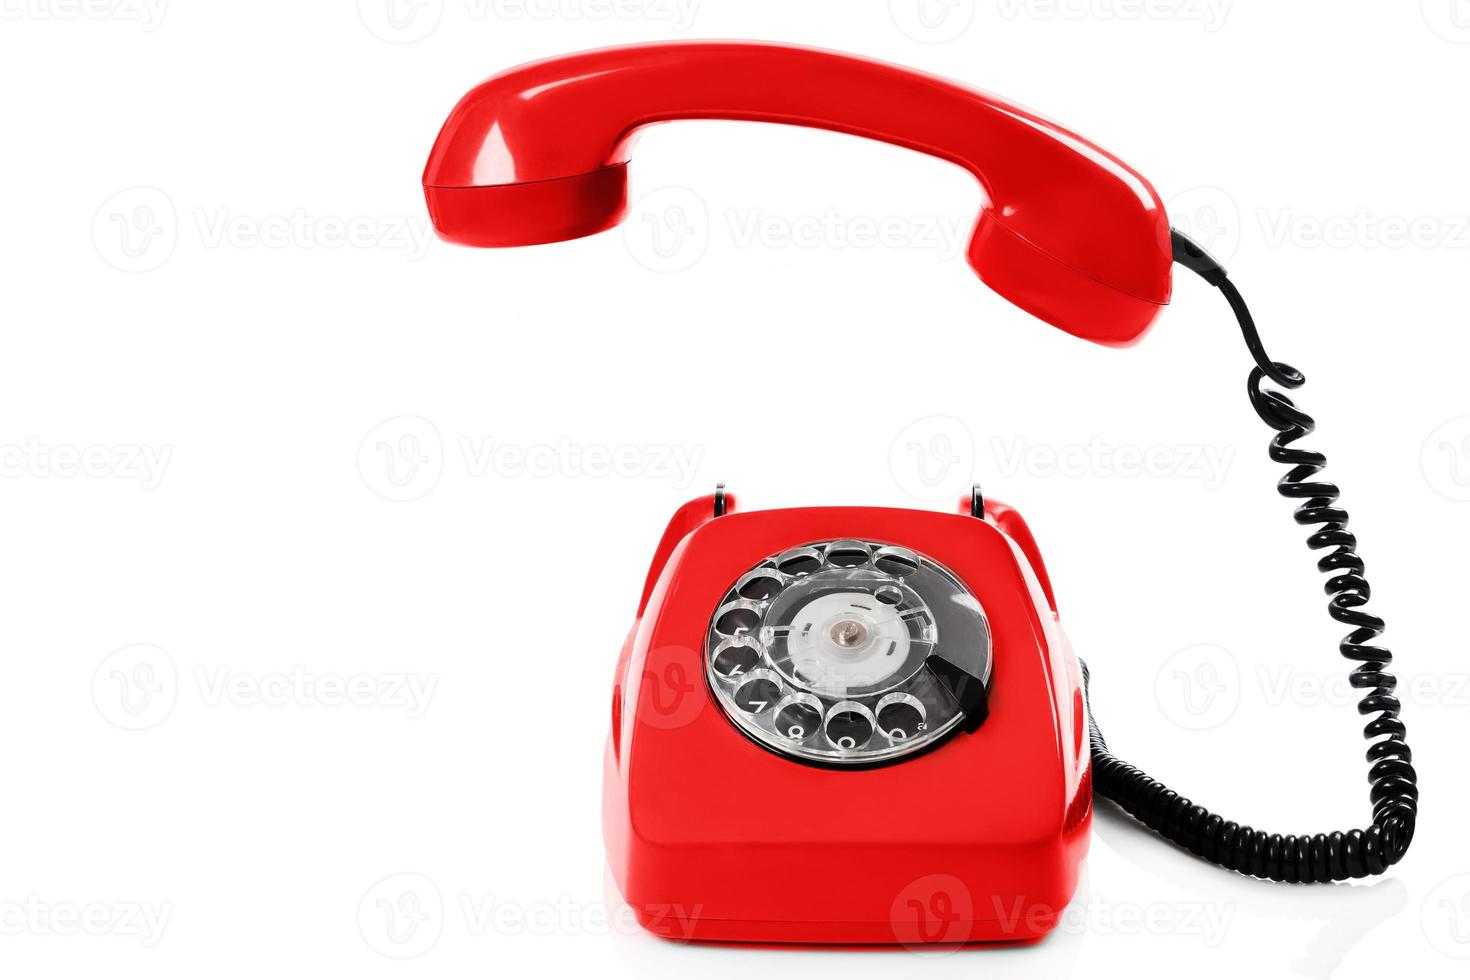 telefone vermelho retrô antiquado fundo branco isolado foto